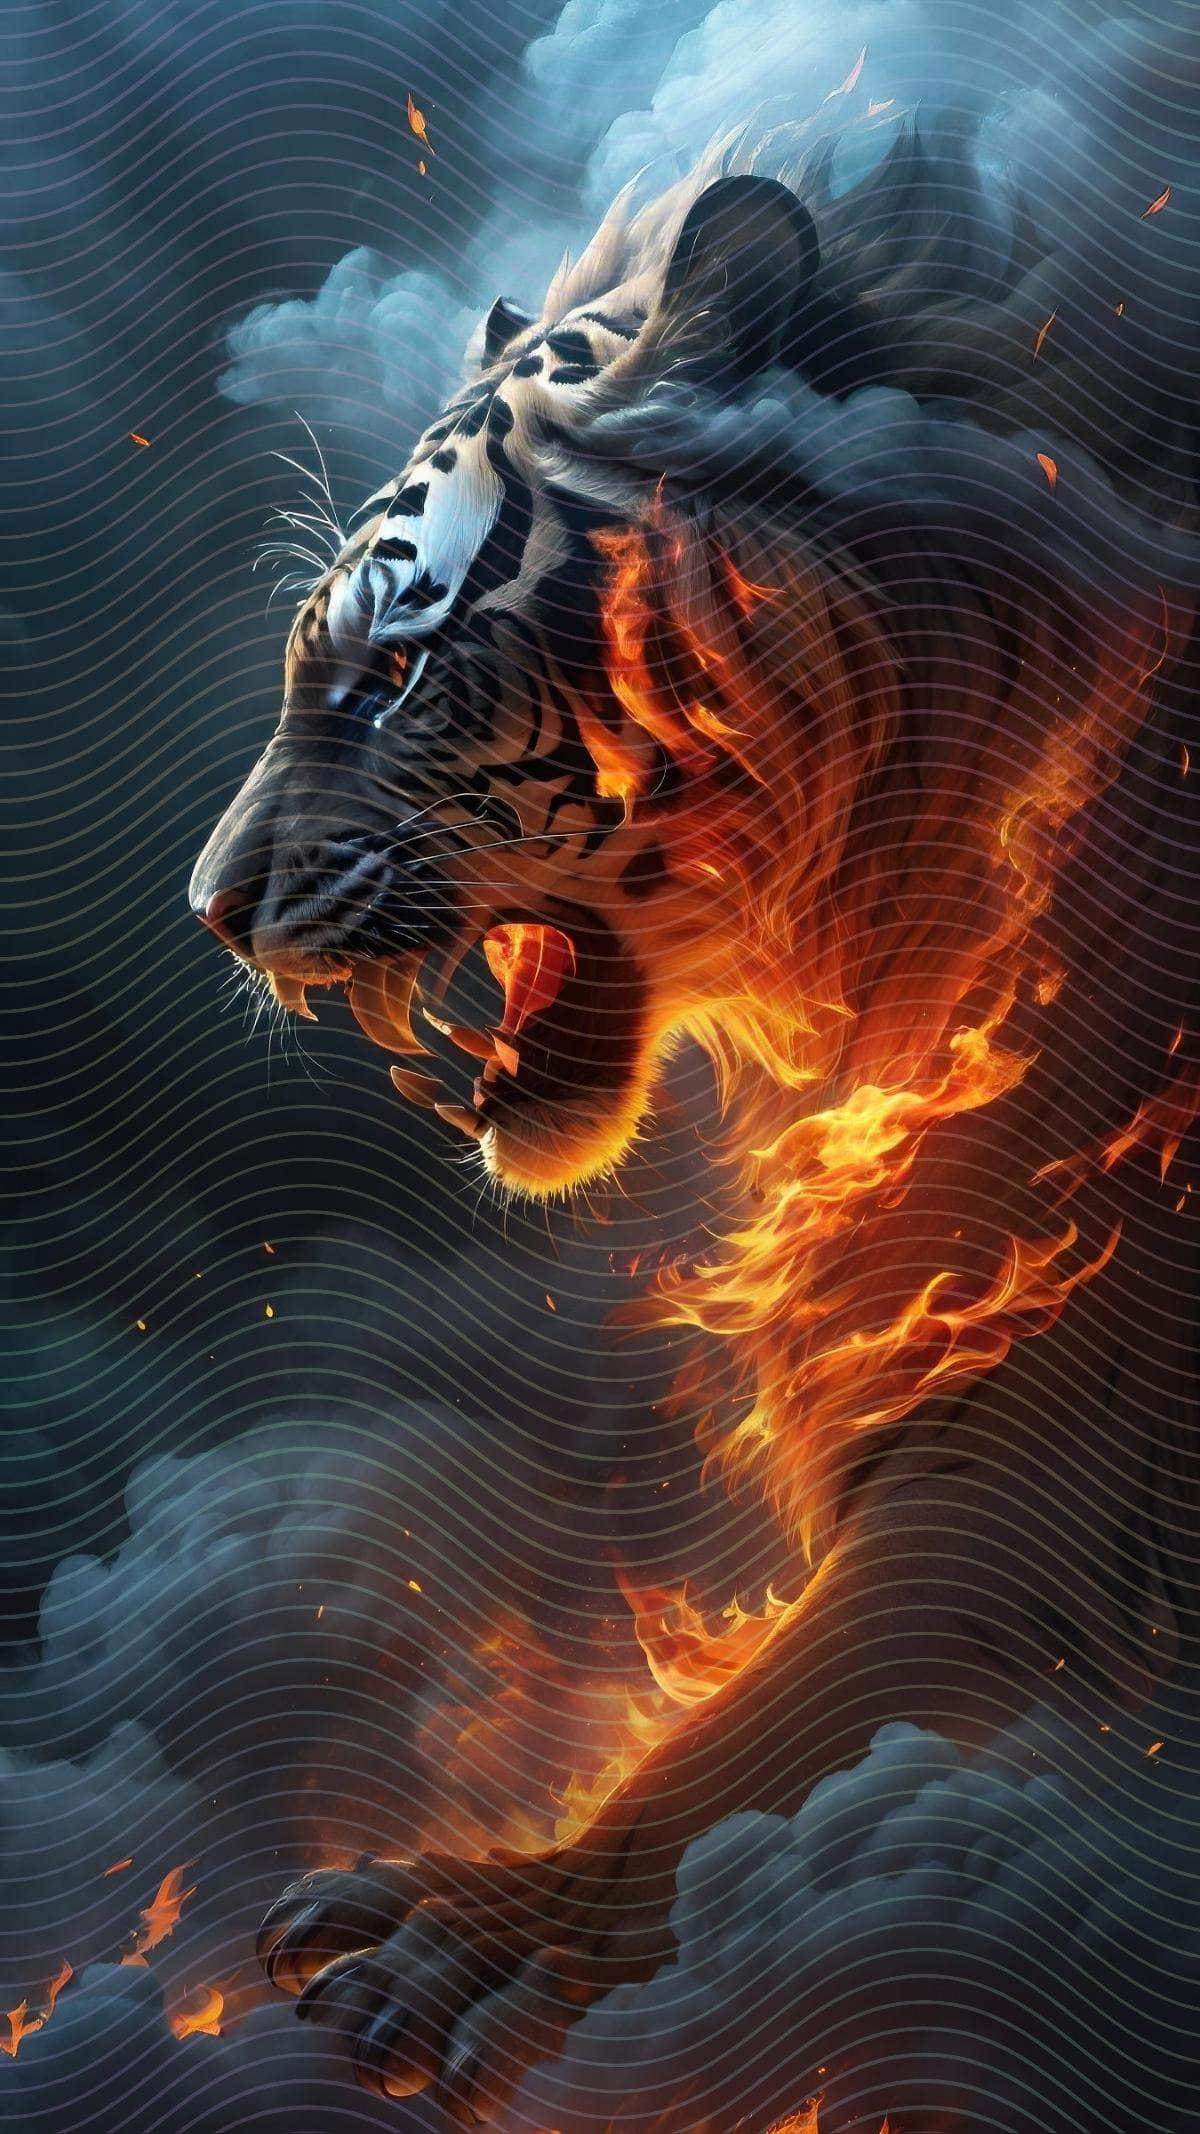 A Tiger Running Through A Cloud Of Fire